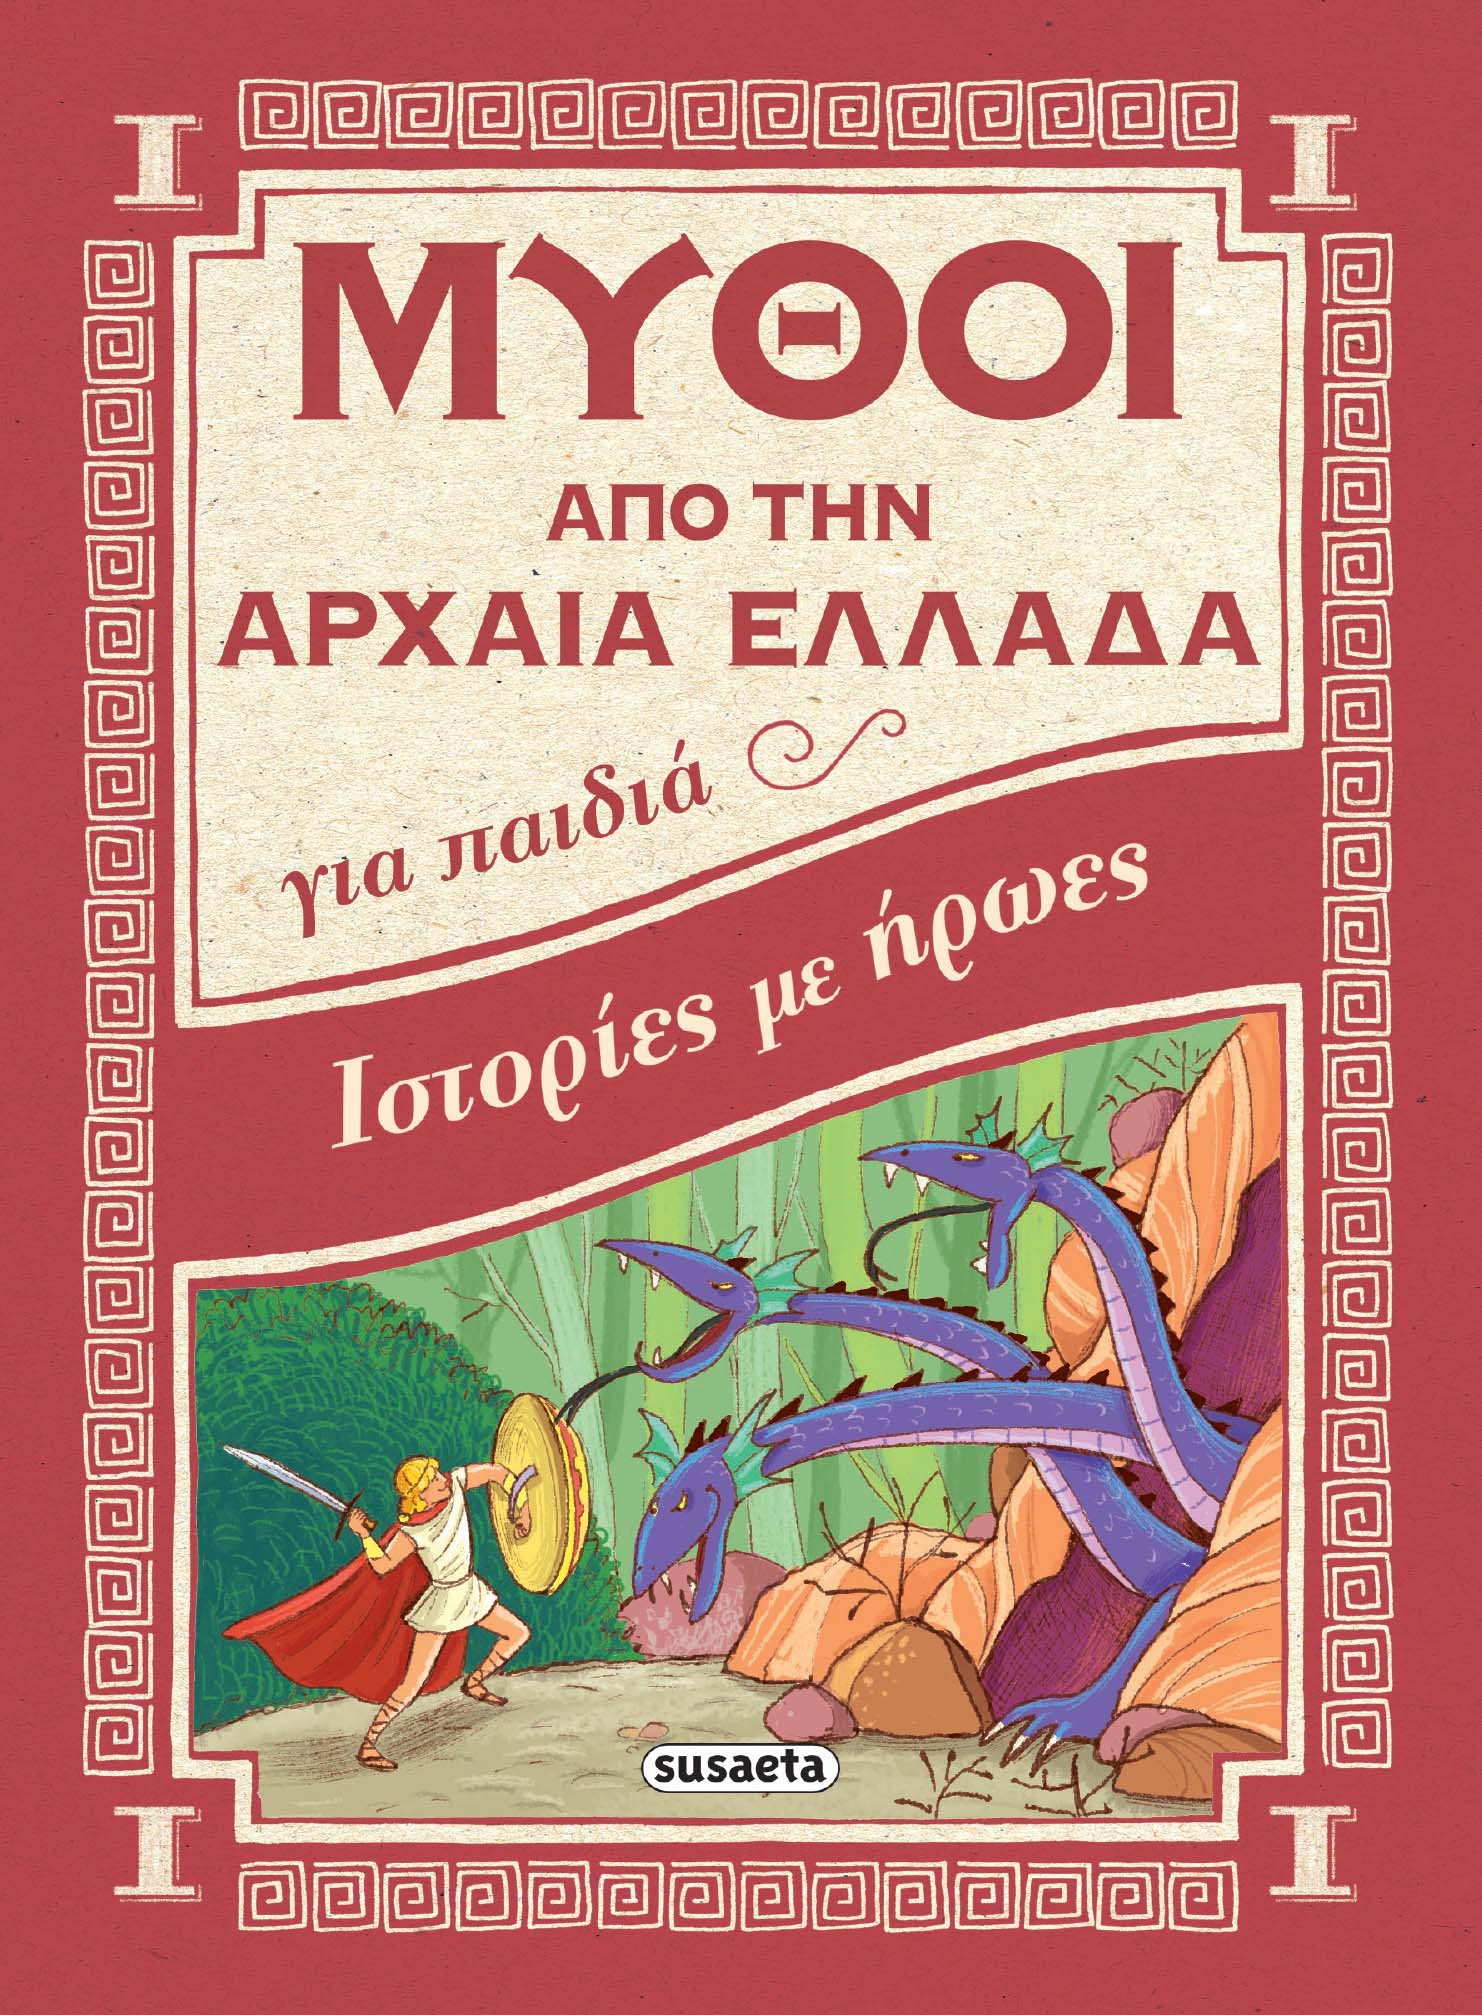 Μύθοι Από Την Αρχαία Ελλάδα - Ιστορίες Με Ήρωες 1